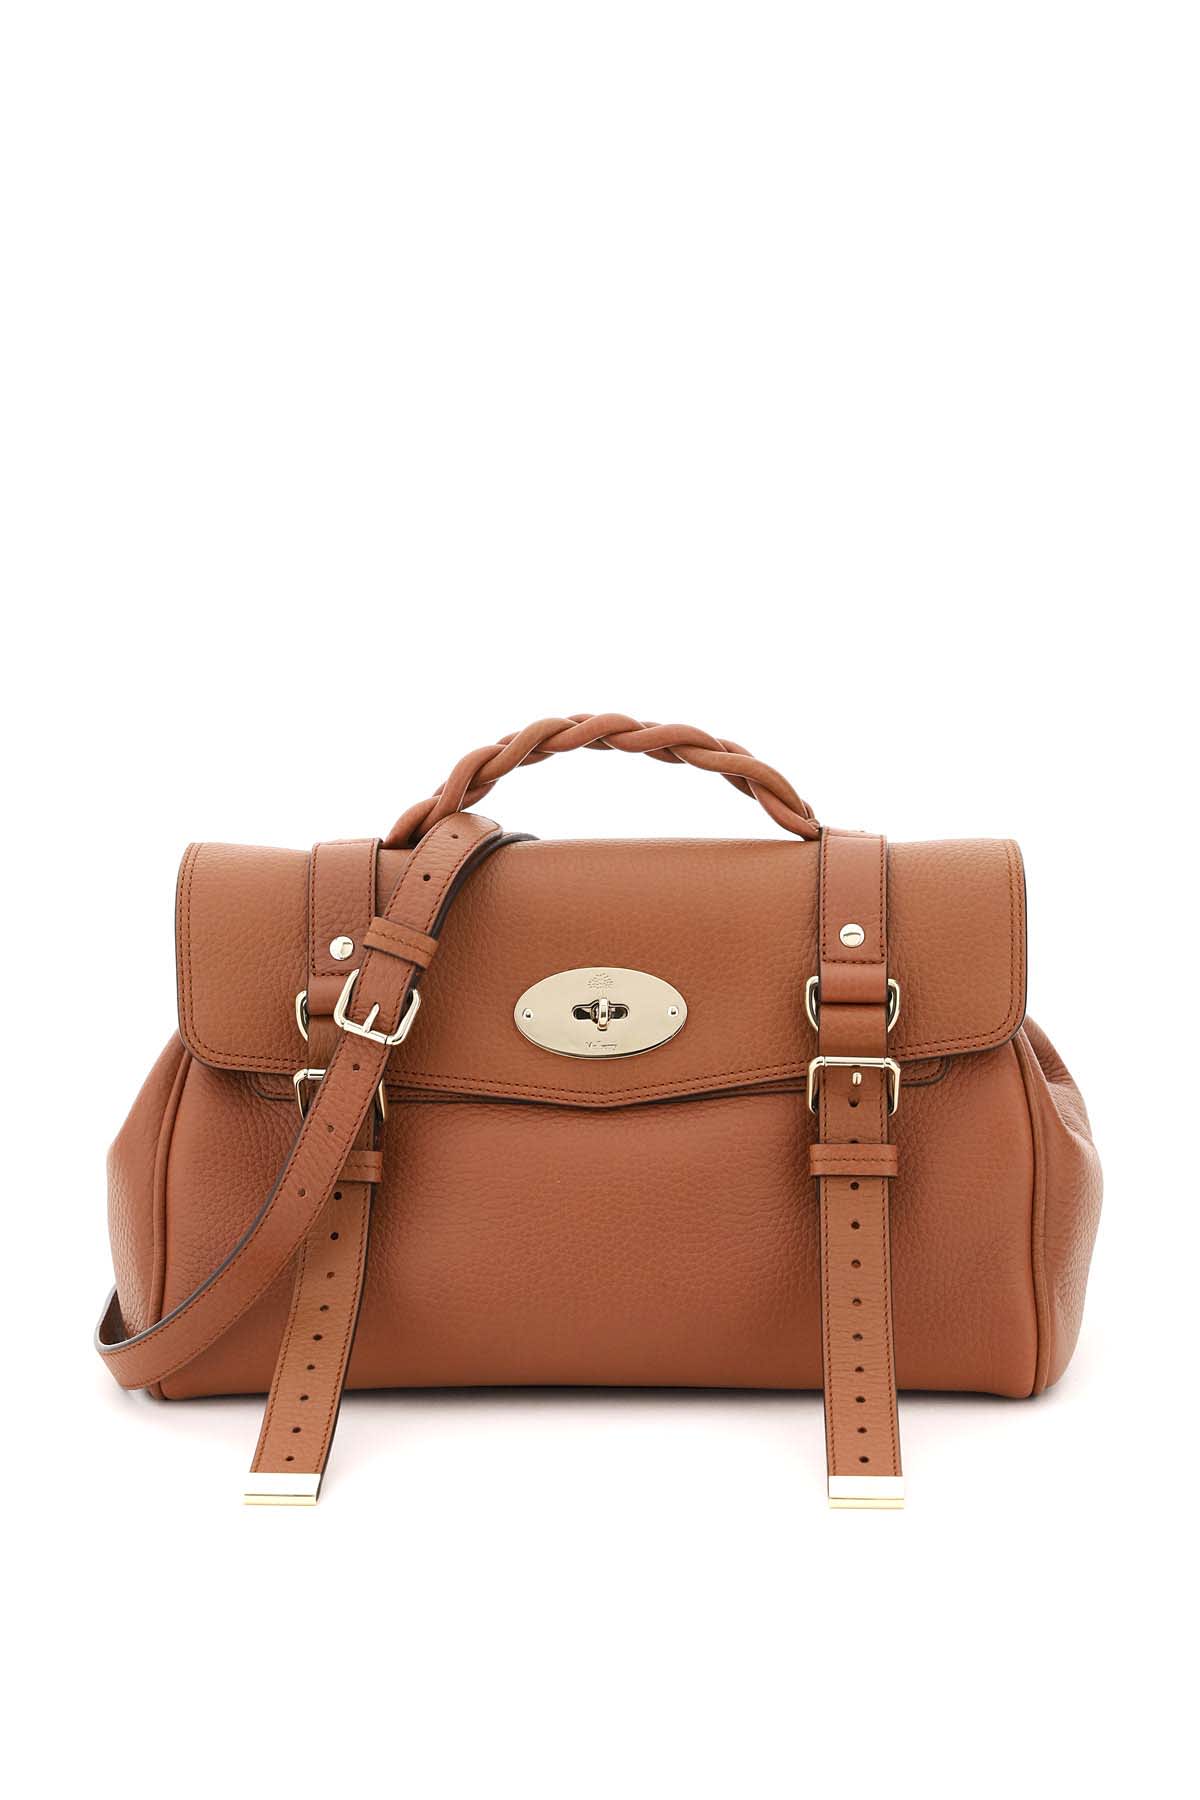 Shop Mulberry Alexa Medium Handbag In Chestnut (brown)